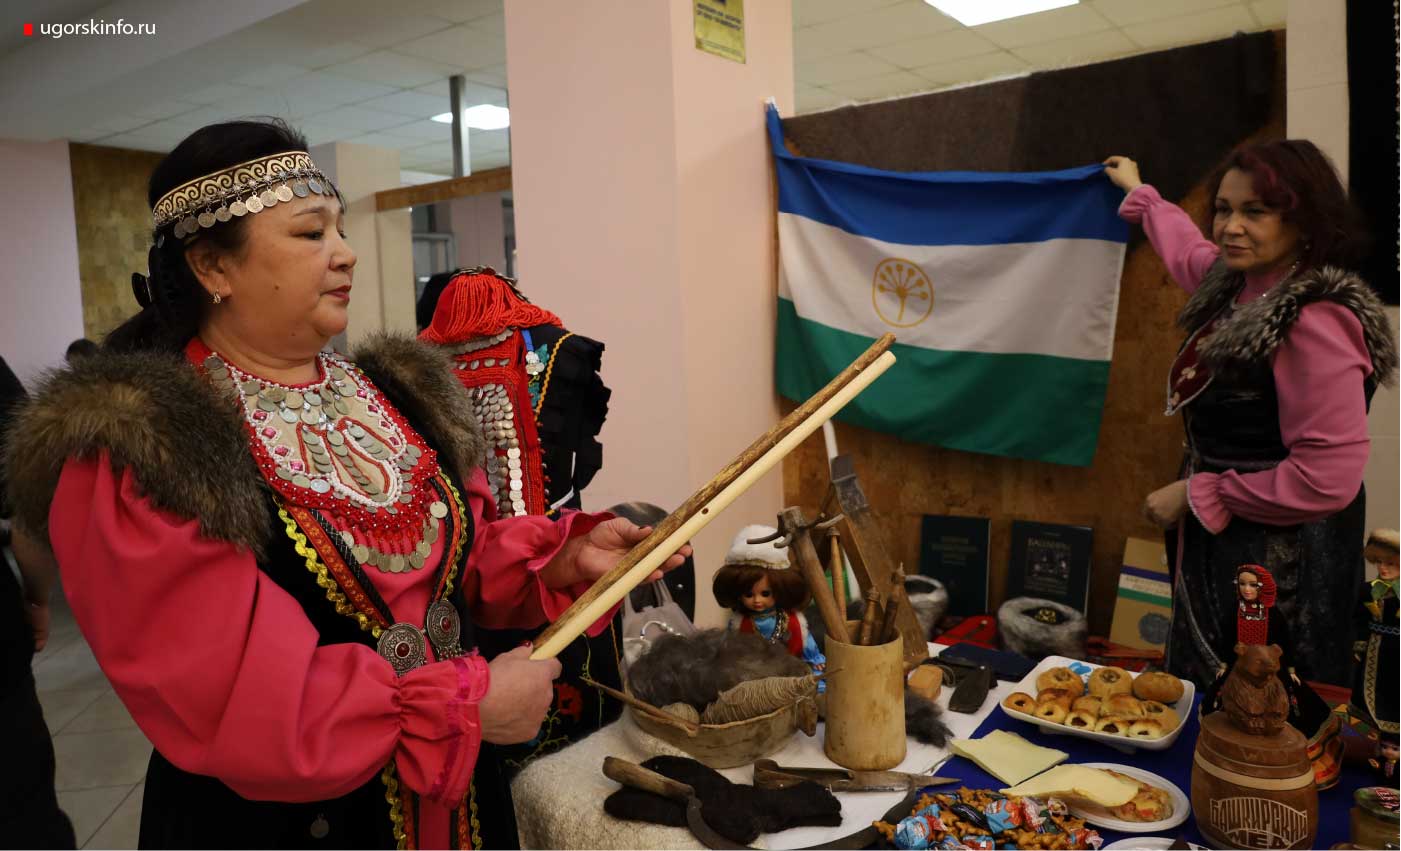 На флаге Башкортостана изображено растение, из которого делают музыкальный инструмент курай.